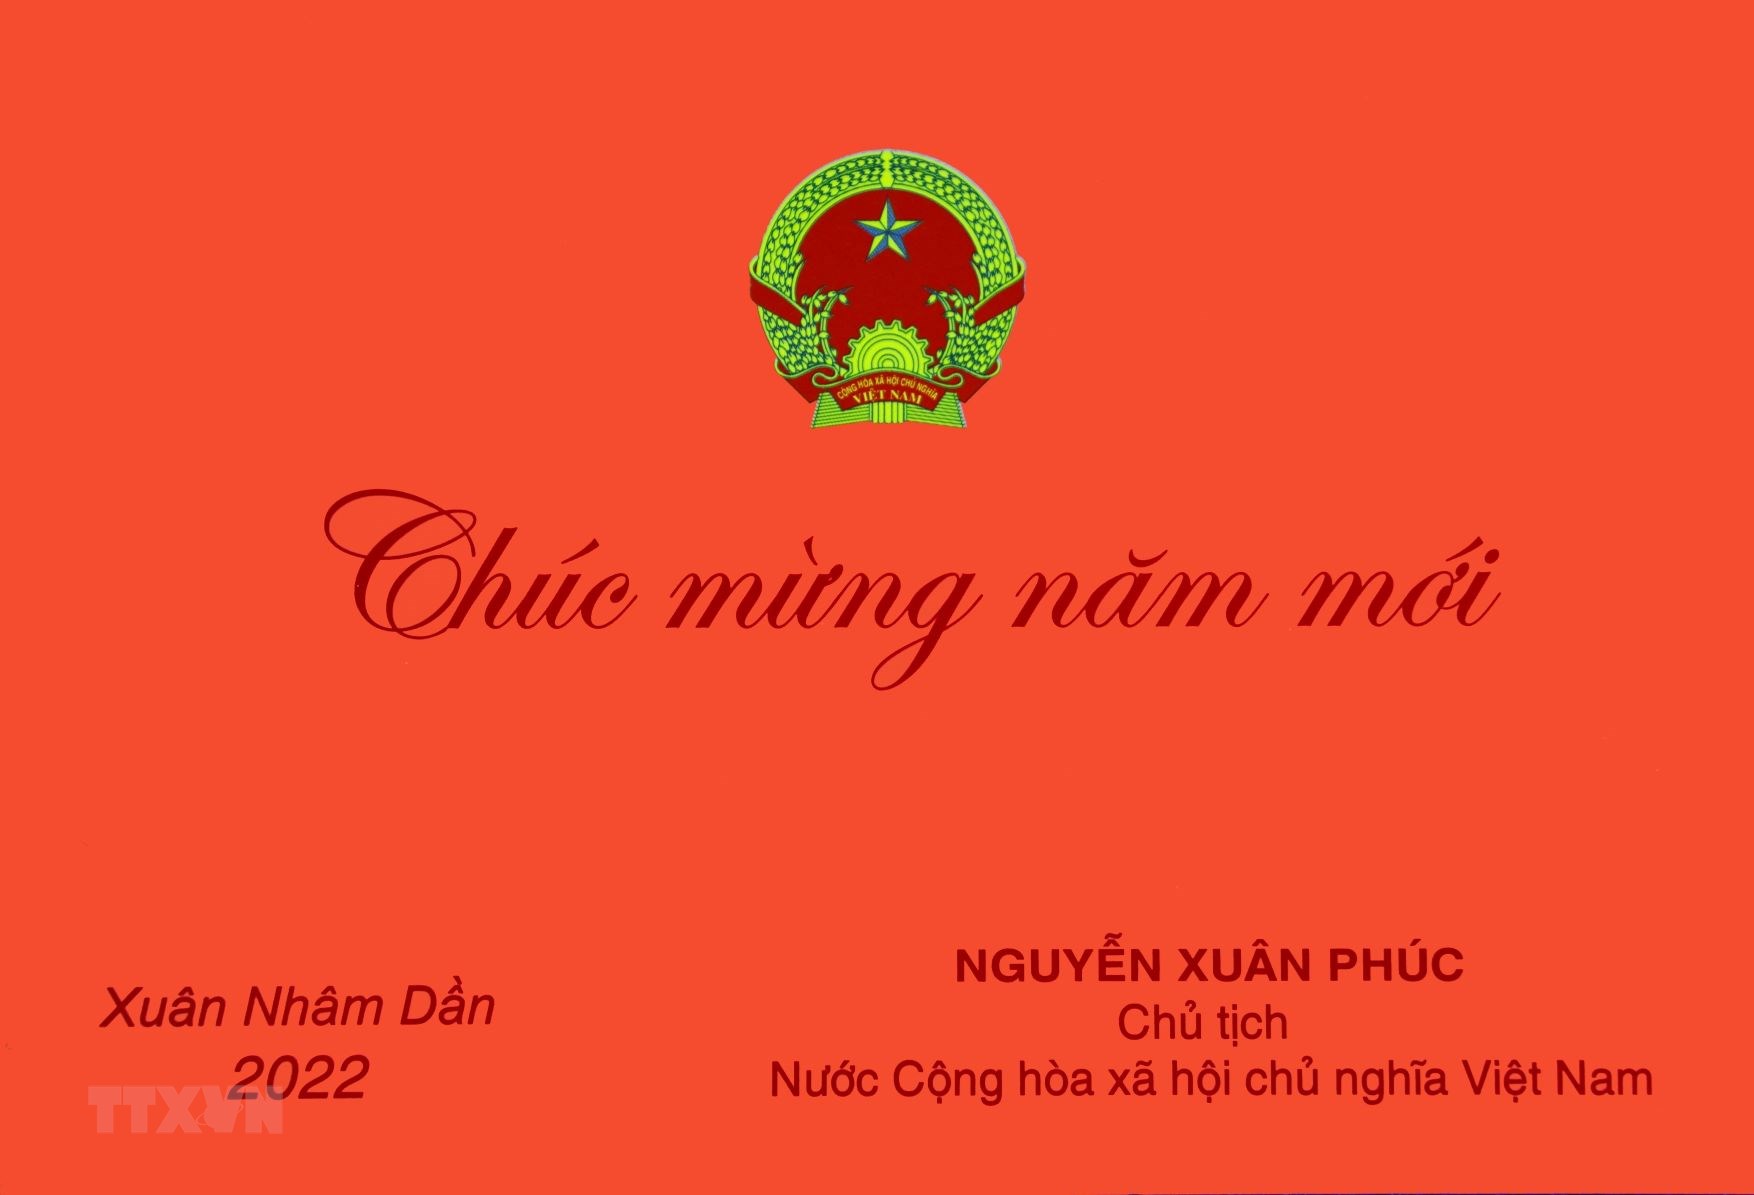 Thiếp Chúc mừng năm mới 2022 của Chủ tịch nước Nguyễn Xuân Phúc